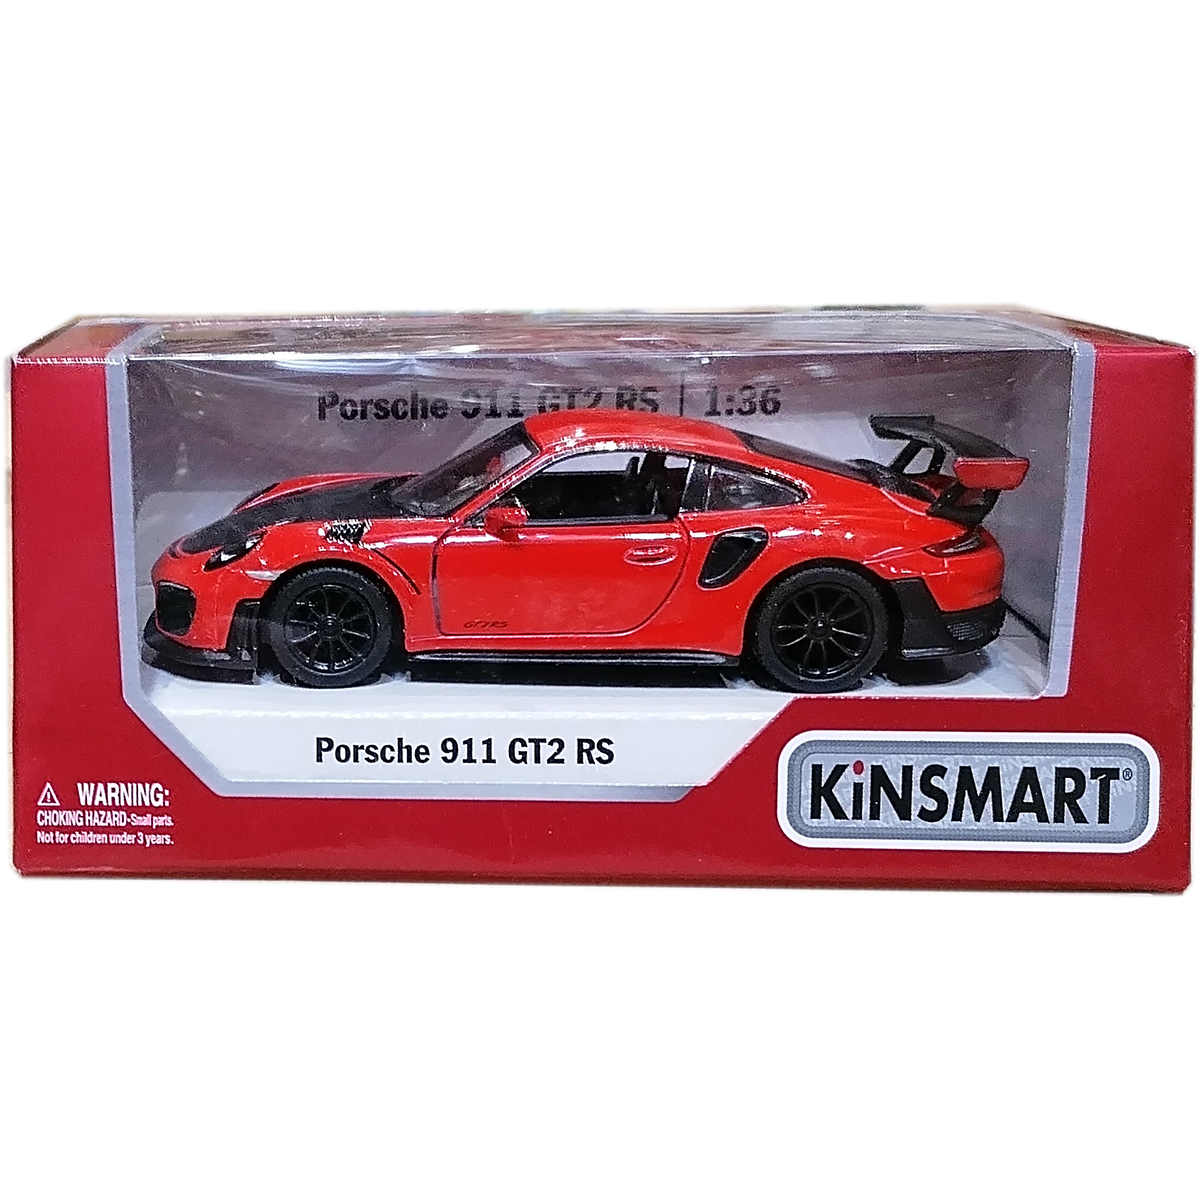 Masinuta din metal Kinsmart, Porsche 911 GT2 RS, Rosu